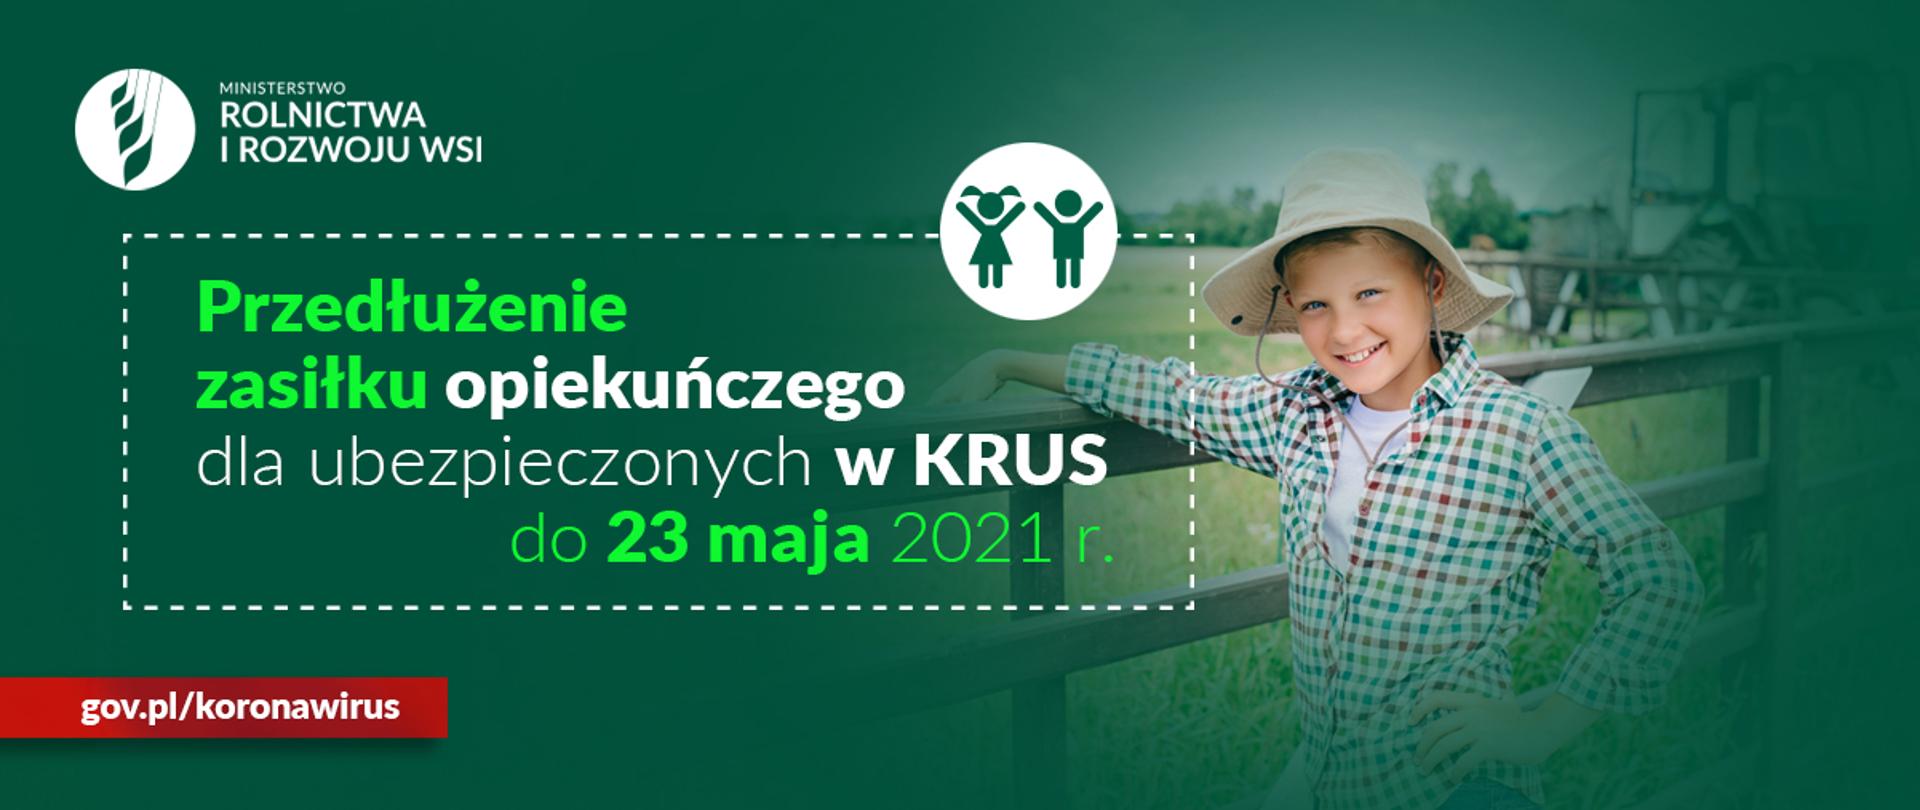 grafika do komunikatu "KRUS – zasiłek opiekuńczy przedłużony do 23 maja"
Uśmiechnięty chłopiec w kapeluszu opierający się o ogrodzenie.